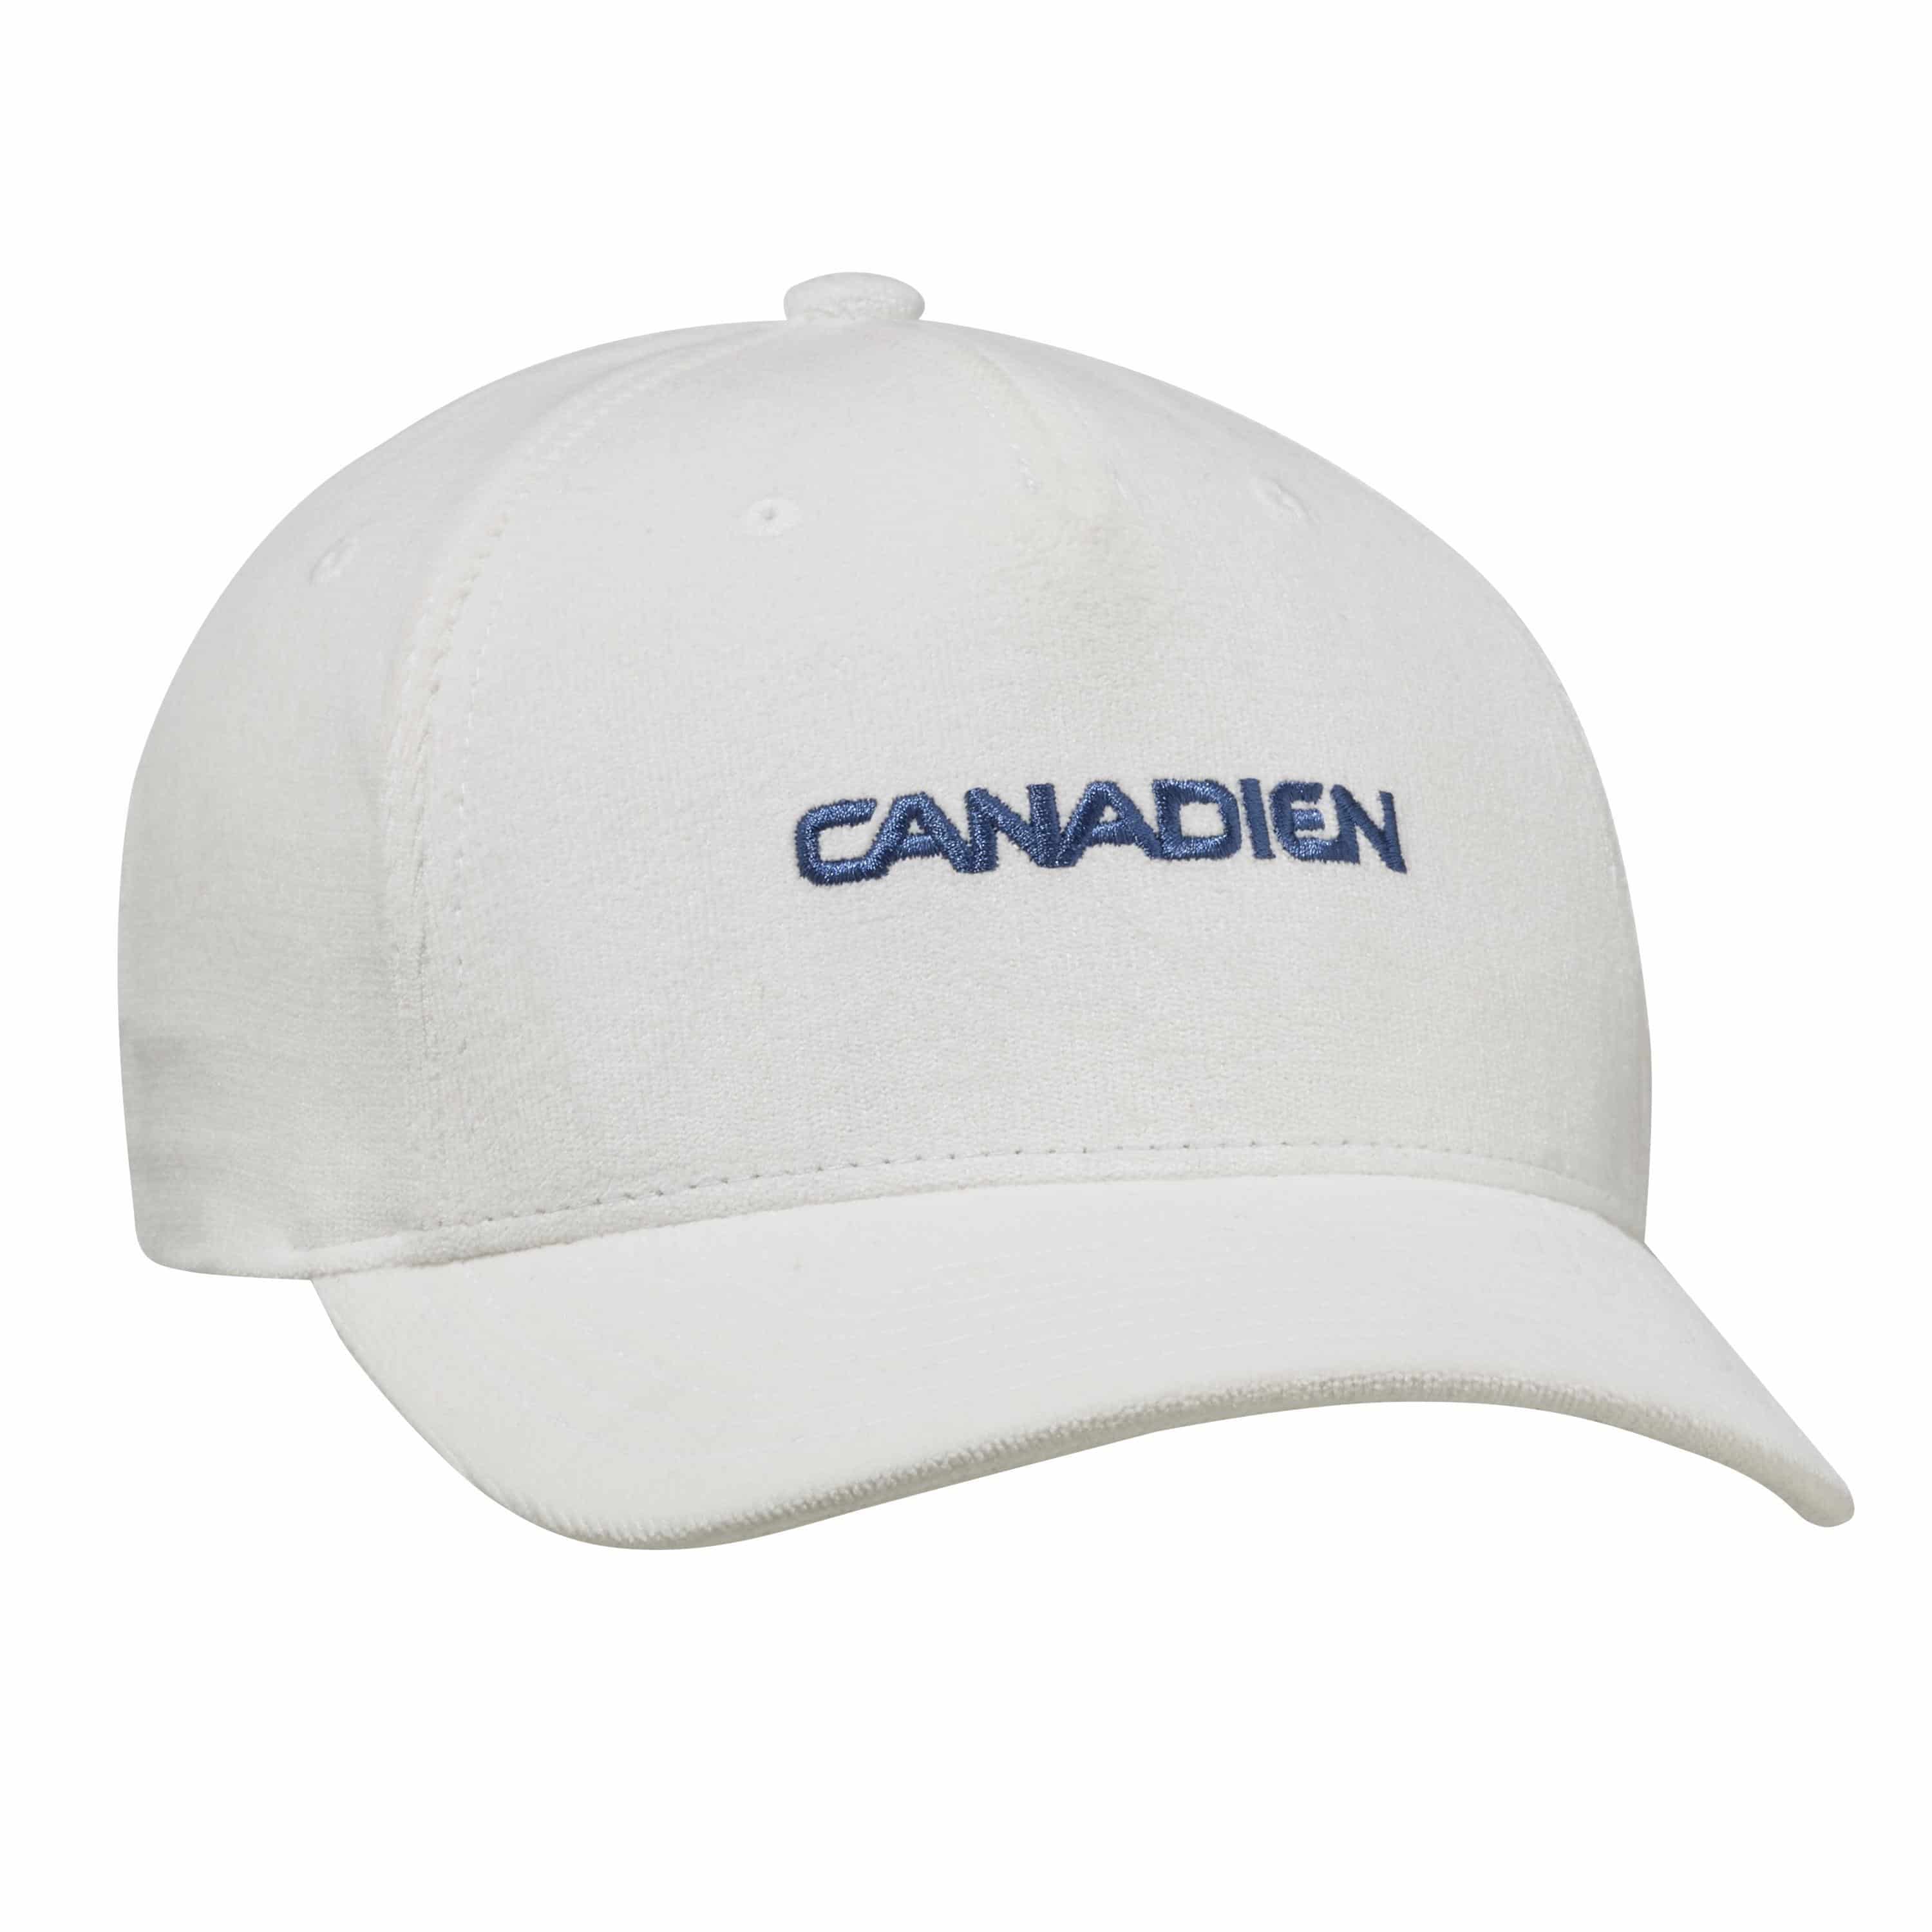 Lifestyle CCM Vintage CANADIEN Structured Flex Cap 